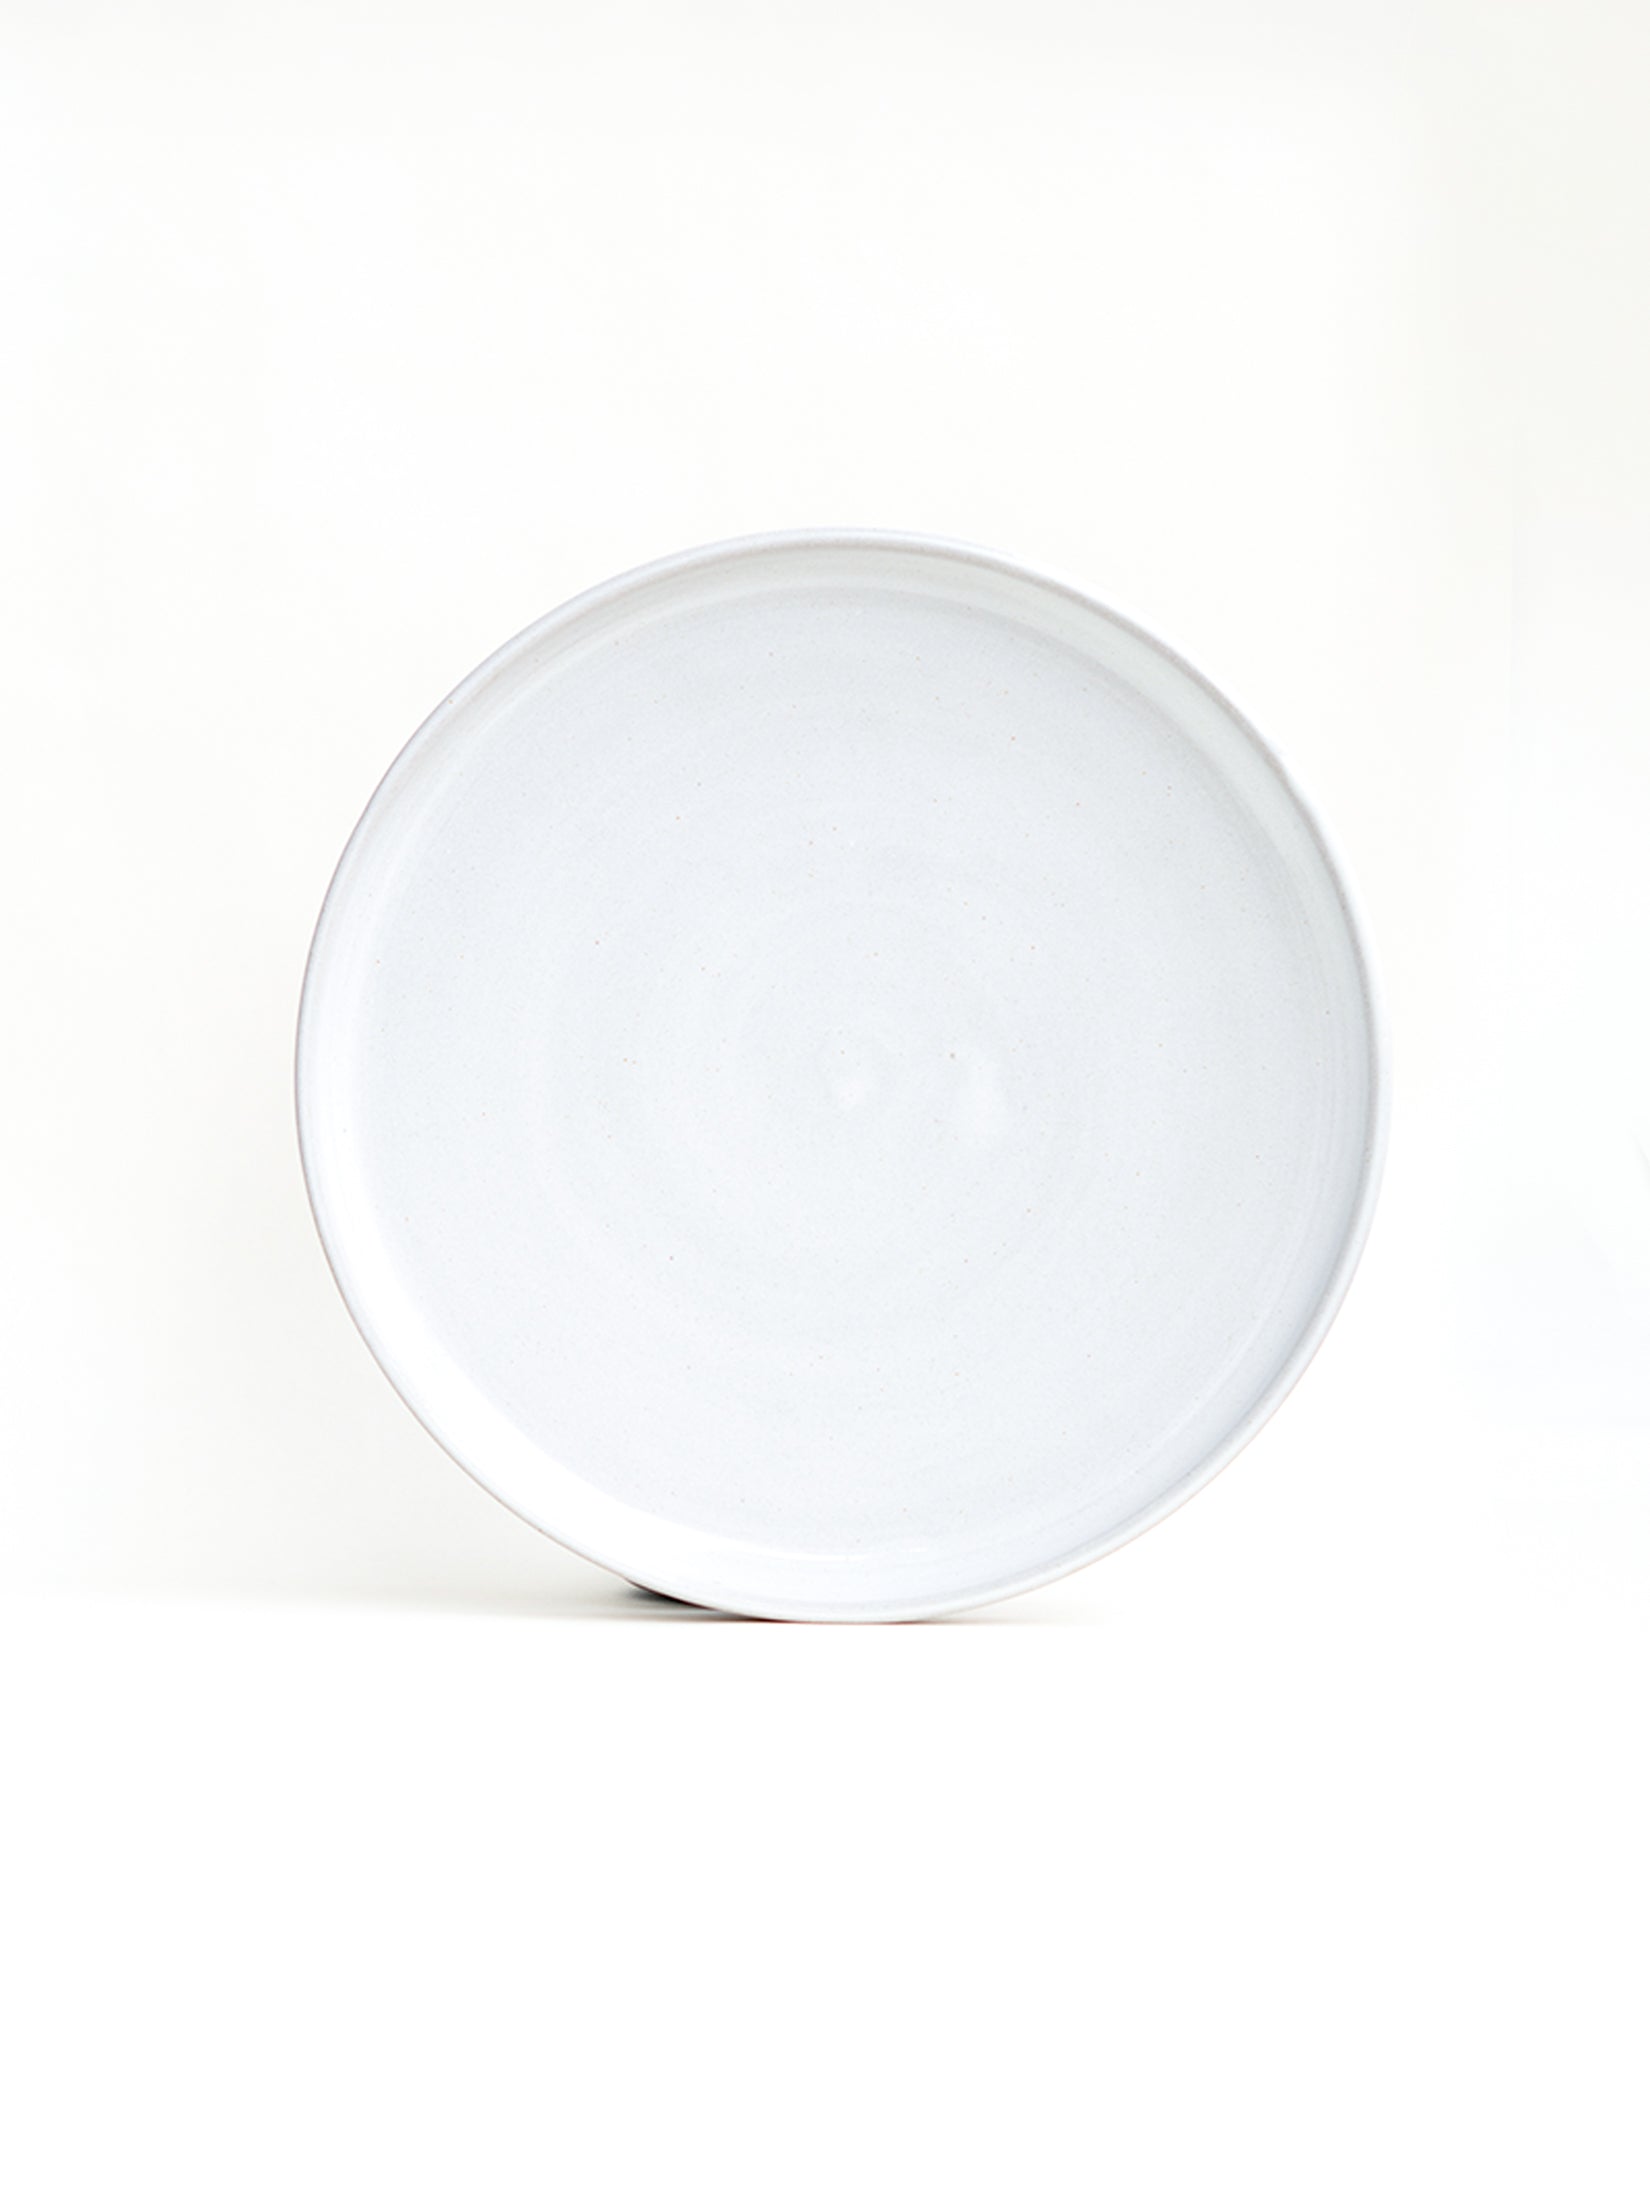 Snowdrop White Stoneware Dinner Plates